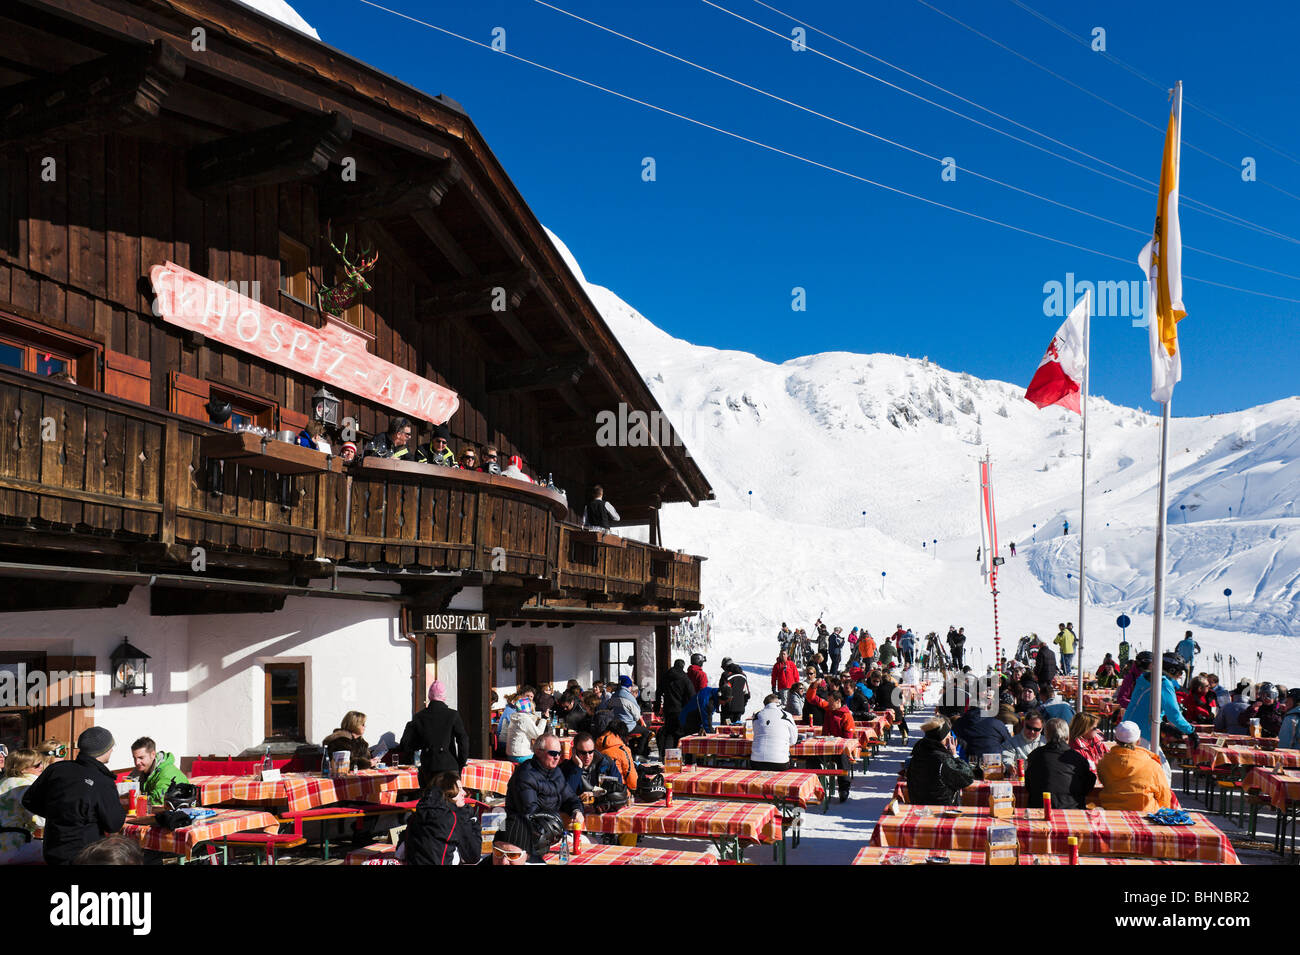 Die Hospiz Alm Bergrestaurant am unteren Rand der Piste in St. Christoph, Skigebiet Arlberg, Vorarlberg, Österreich Stockfoto